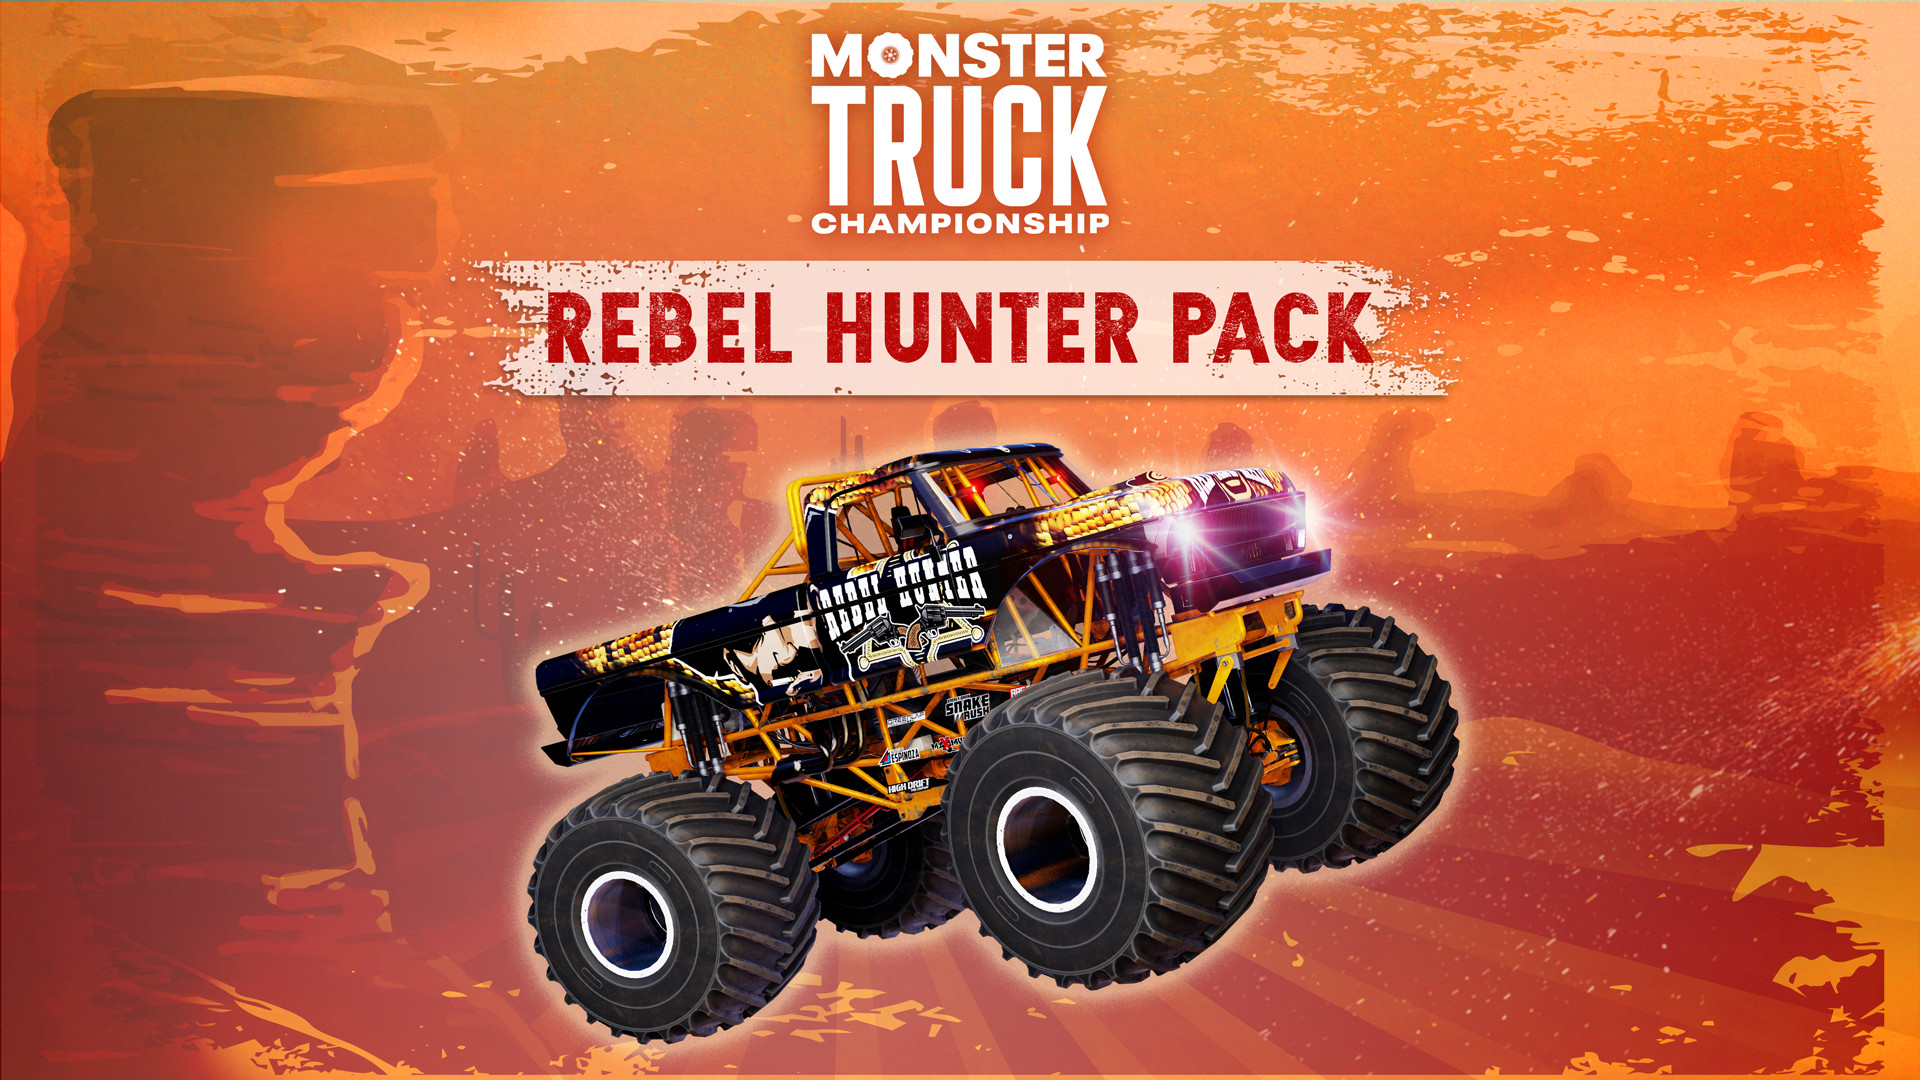 Monster Truck Championship Rebel Hunter pack Featured Screenshot #1